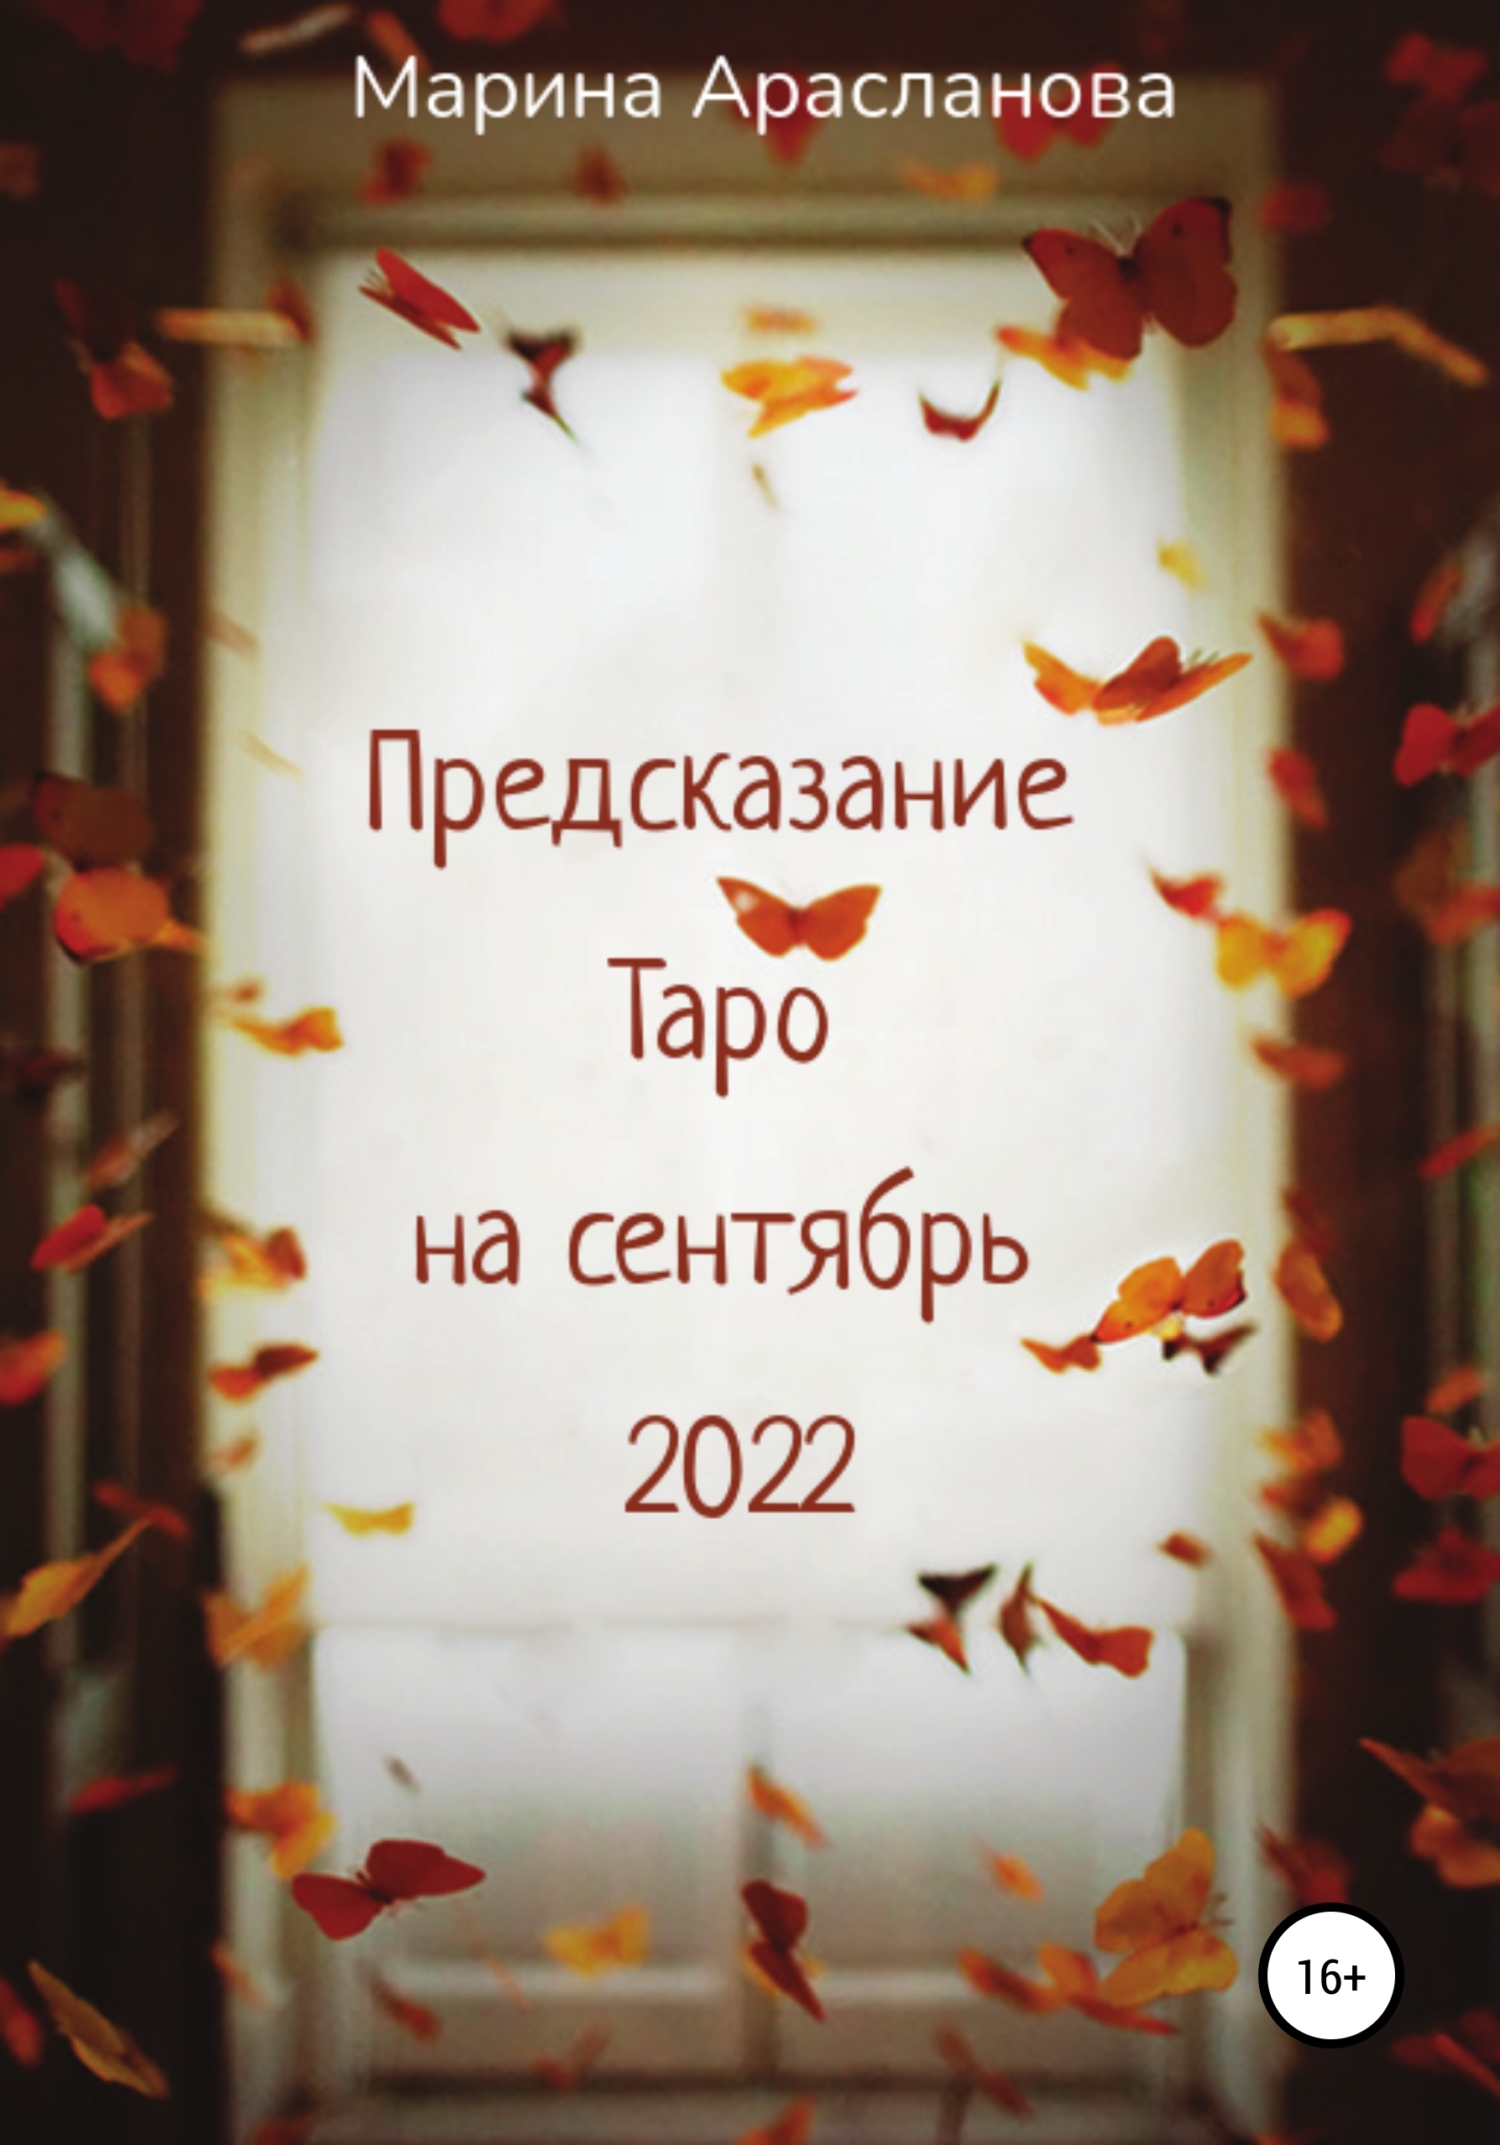 Предсказание Таро на сентябрь 2022 - Марина Арасланова